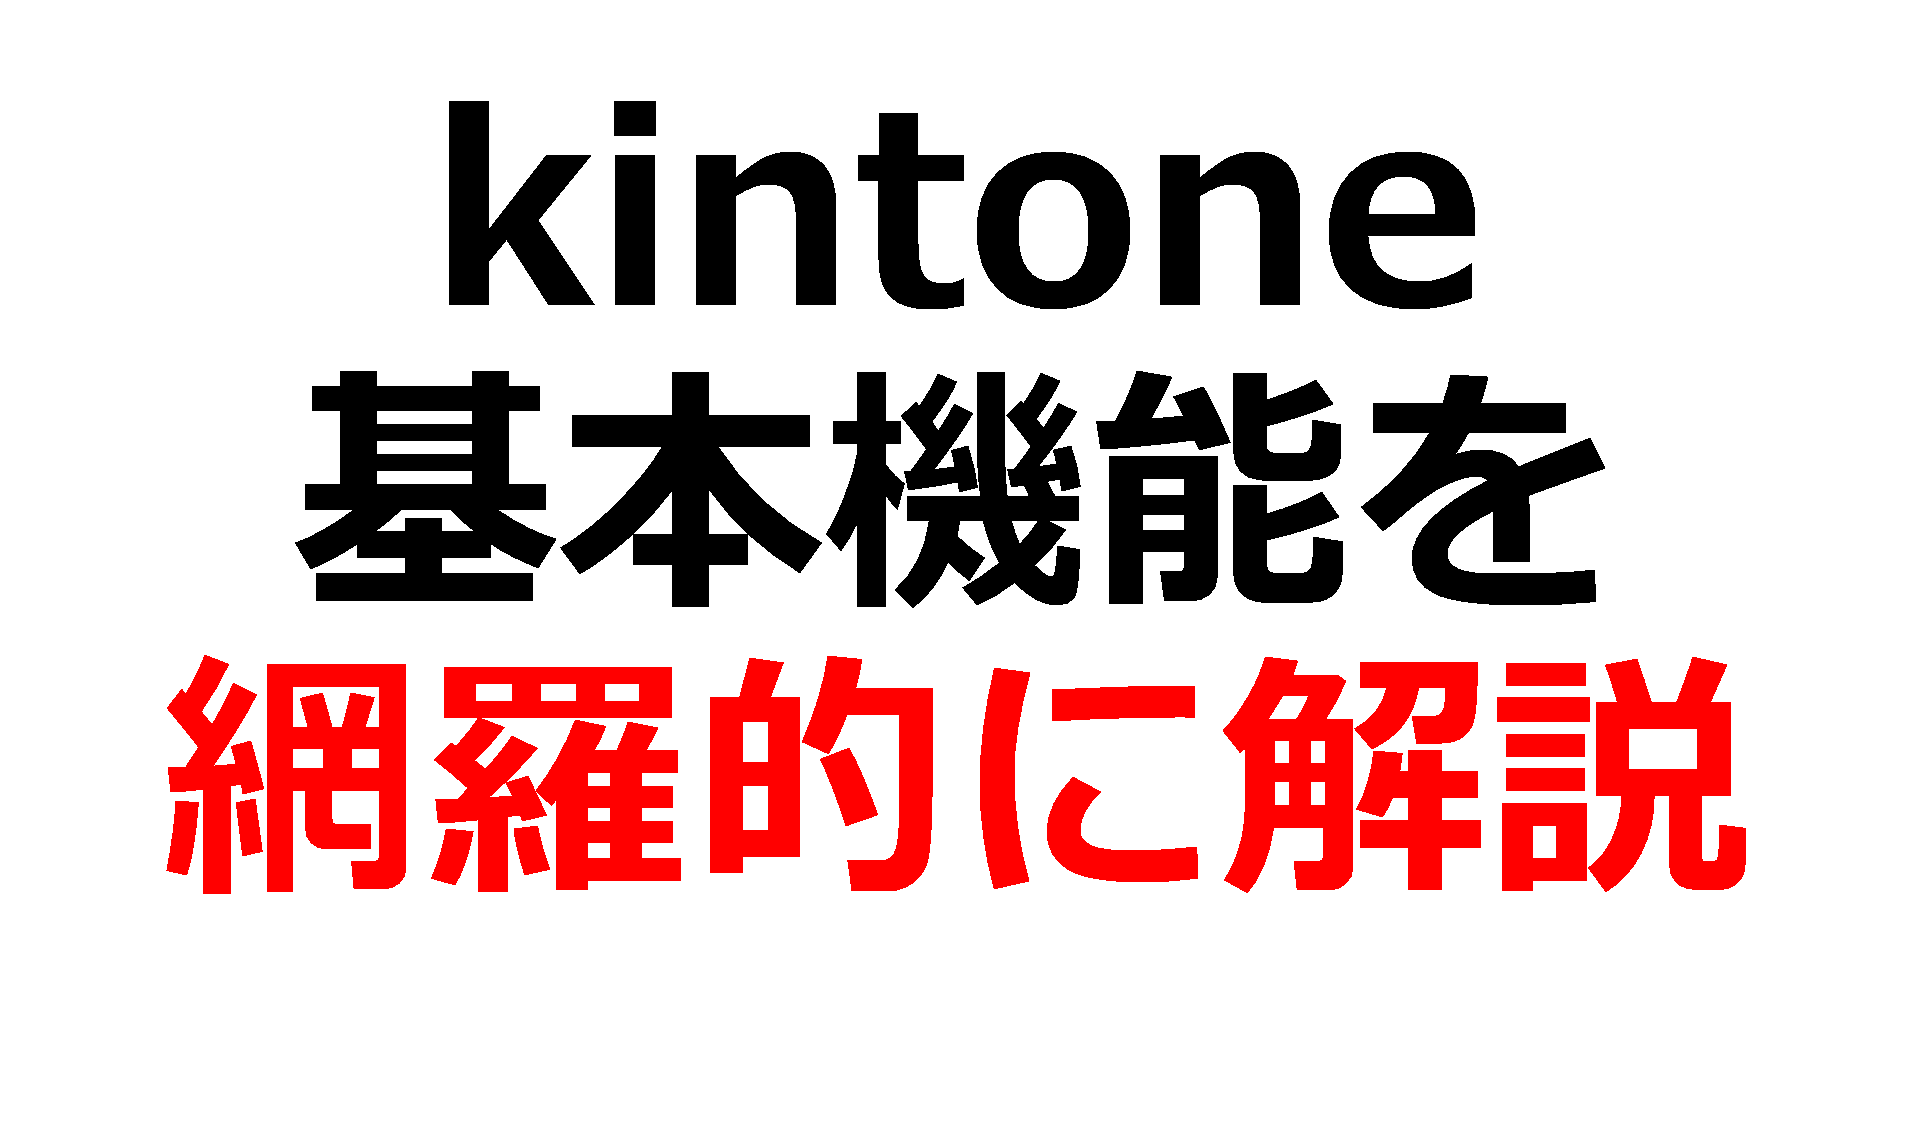 kintone(キントーン)とは？出来ること・出来ないことを解説!